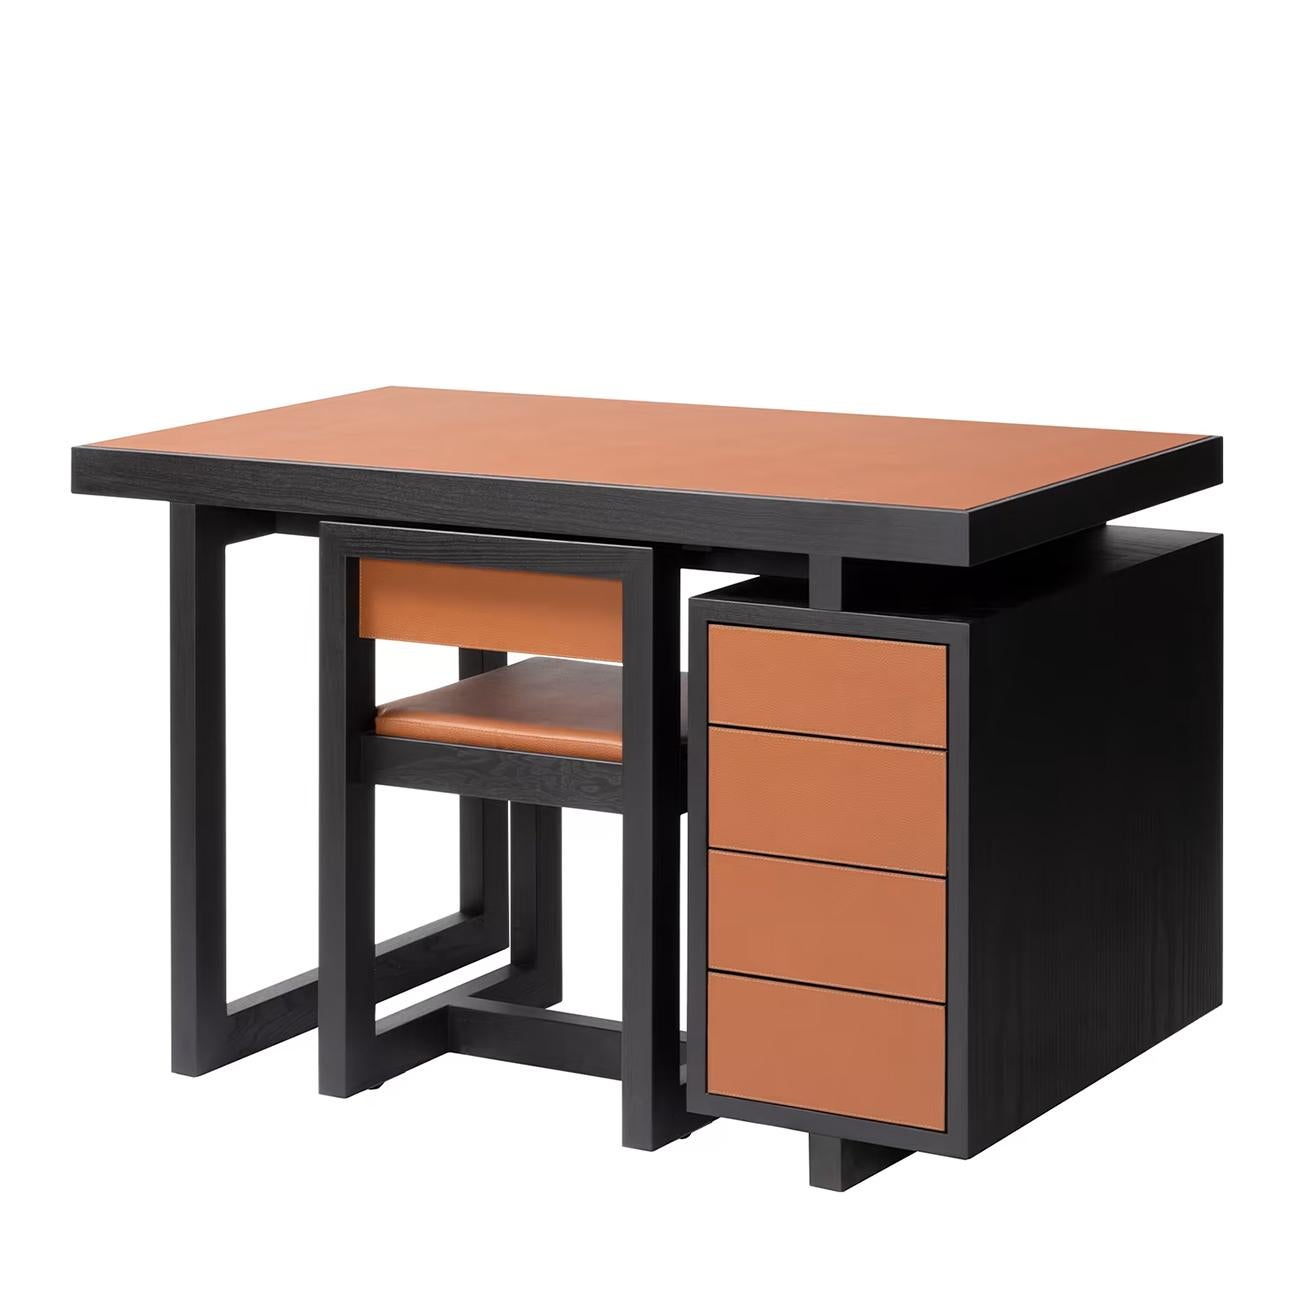 Schreibtisch mit Stuhl Set Towny mit allen Strukturen in massiv
holz in Wenge gebeizt, bezogen mit hochwertigem
echtes Leder in orangefarbenem Soft-Finish. Schreibtisch mit 4
schubladen, darunter der Schreibtischstuhl auch mit Struktur in